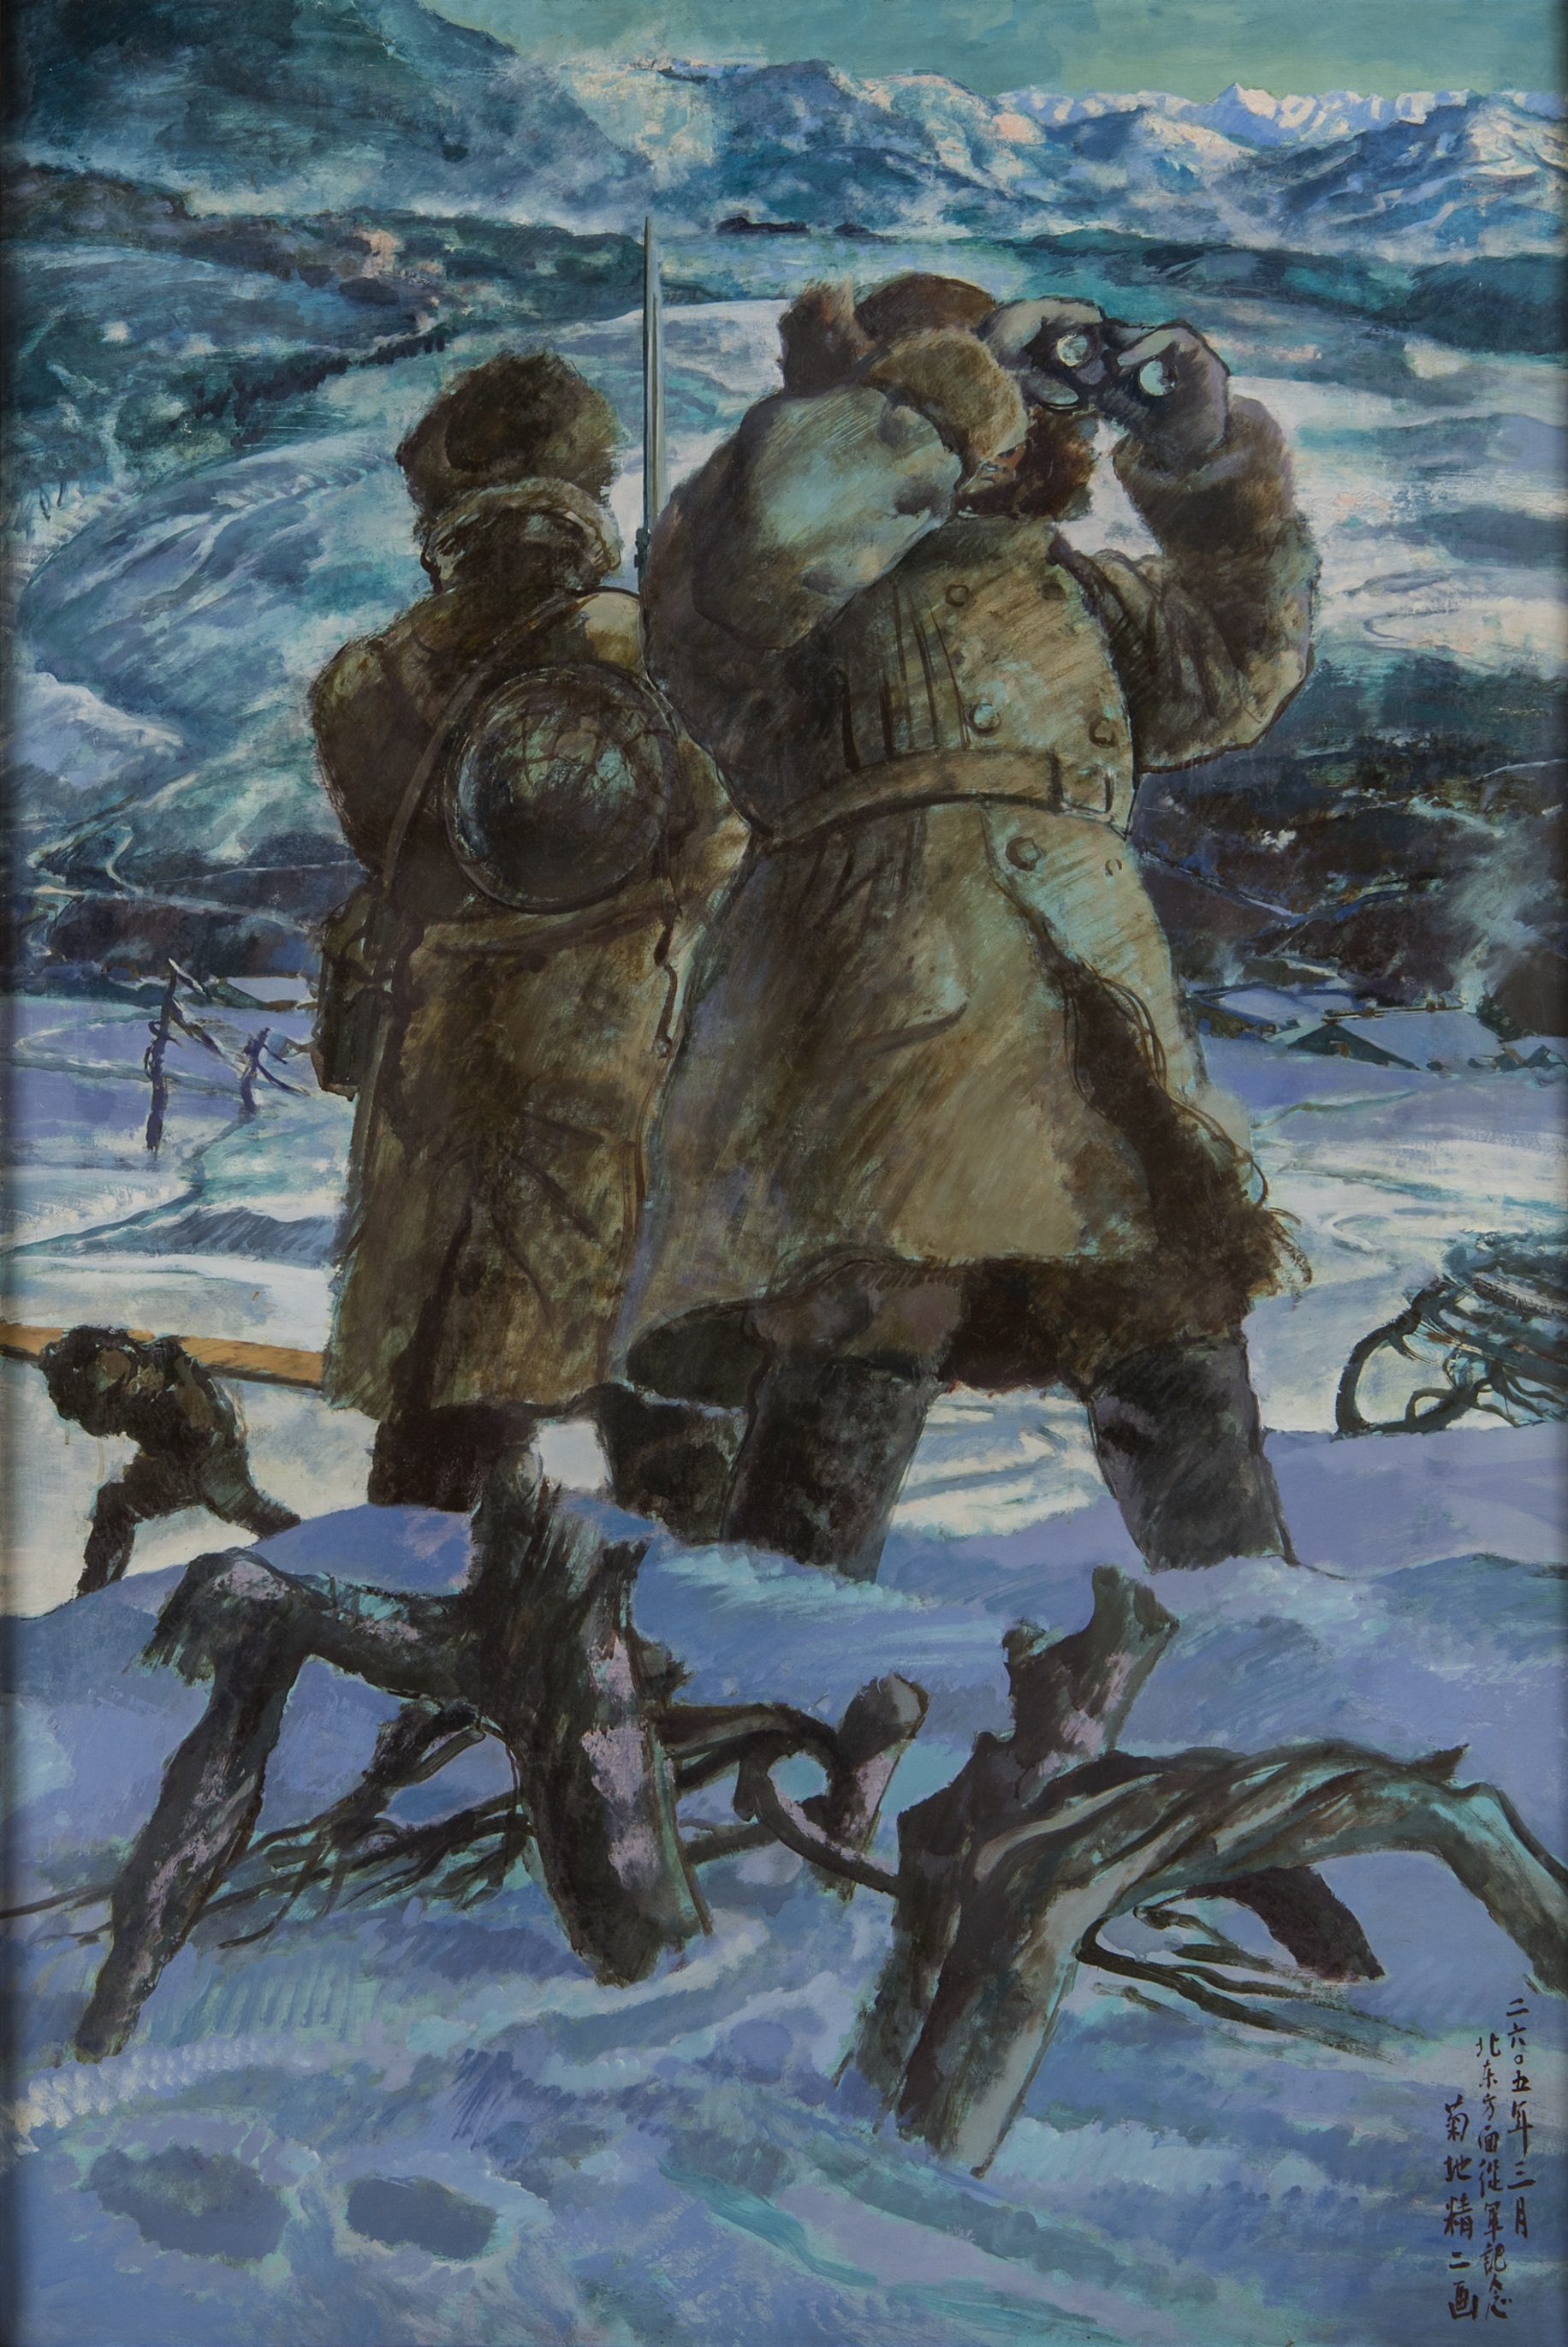 戰爭時期的北海道美術<br>菊地精二《北鎮》1945年